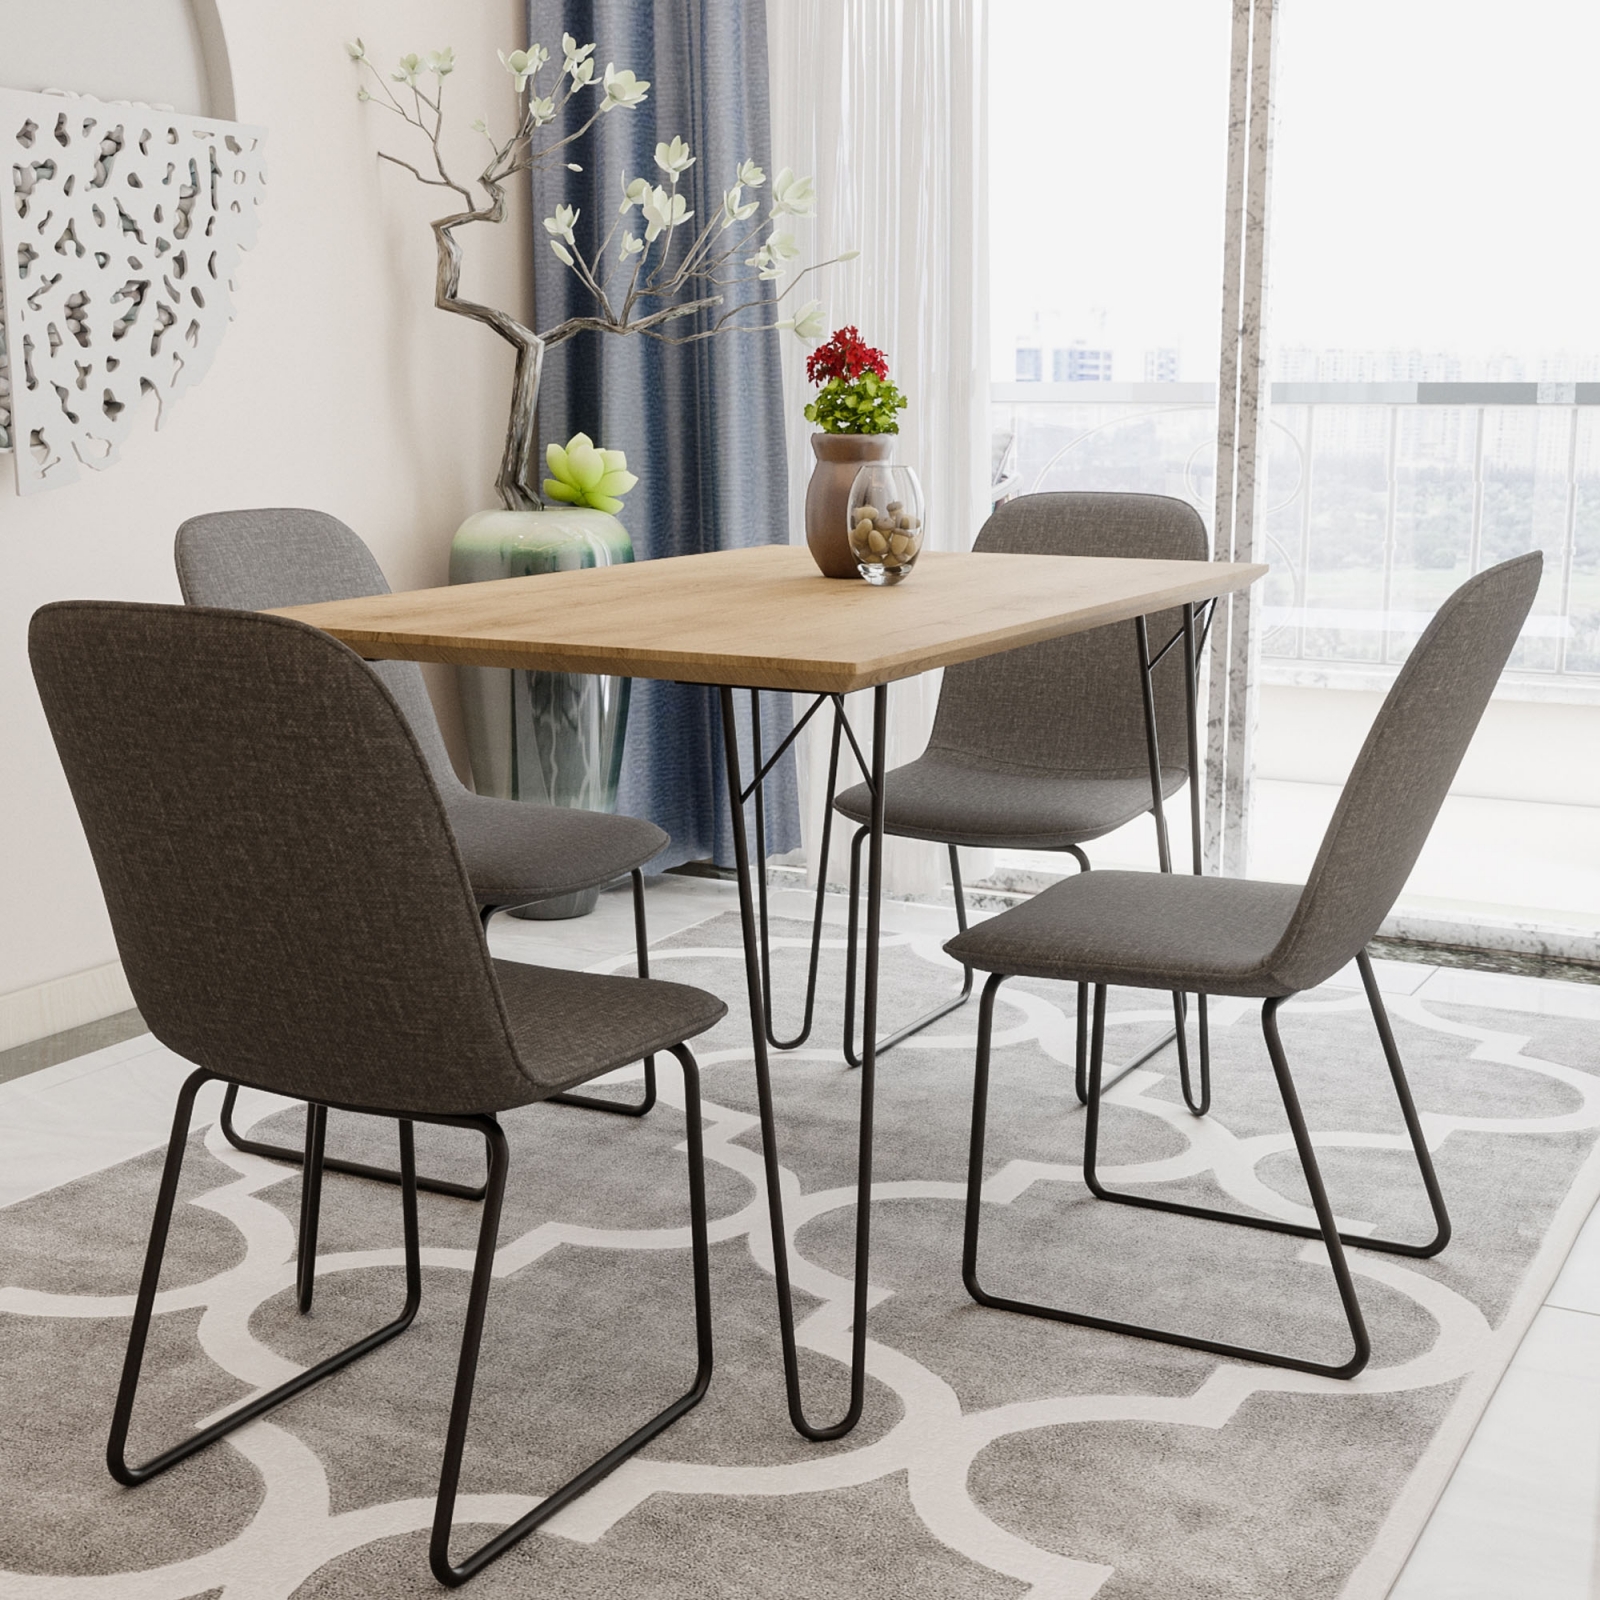 https://www.mobilier-deco.com/img/produit/lina-table-de-salle-a-manger-avec-4-chaises-1.jpg